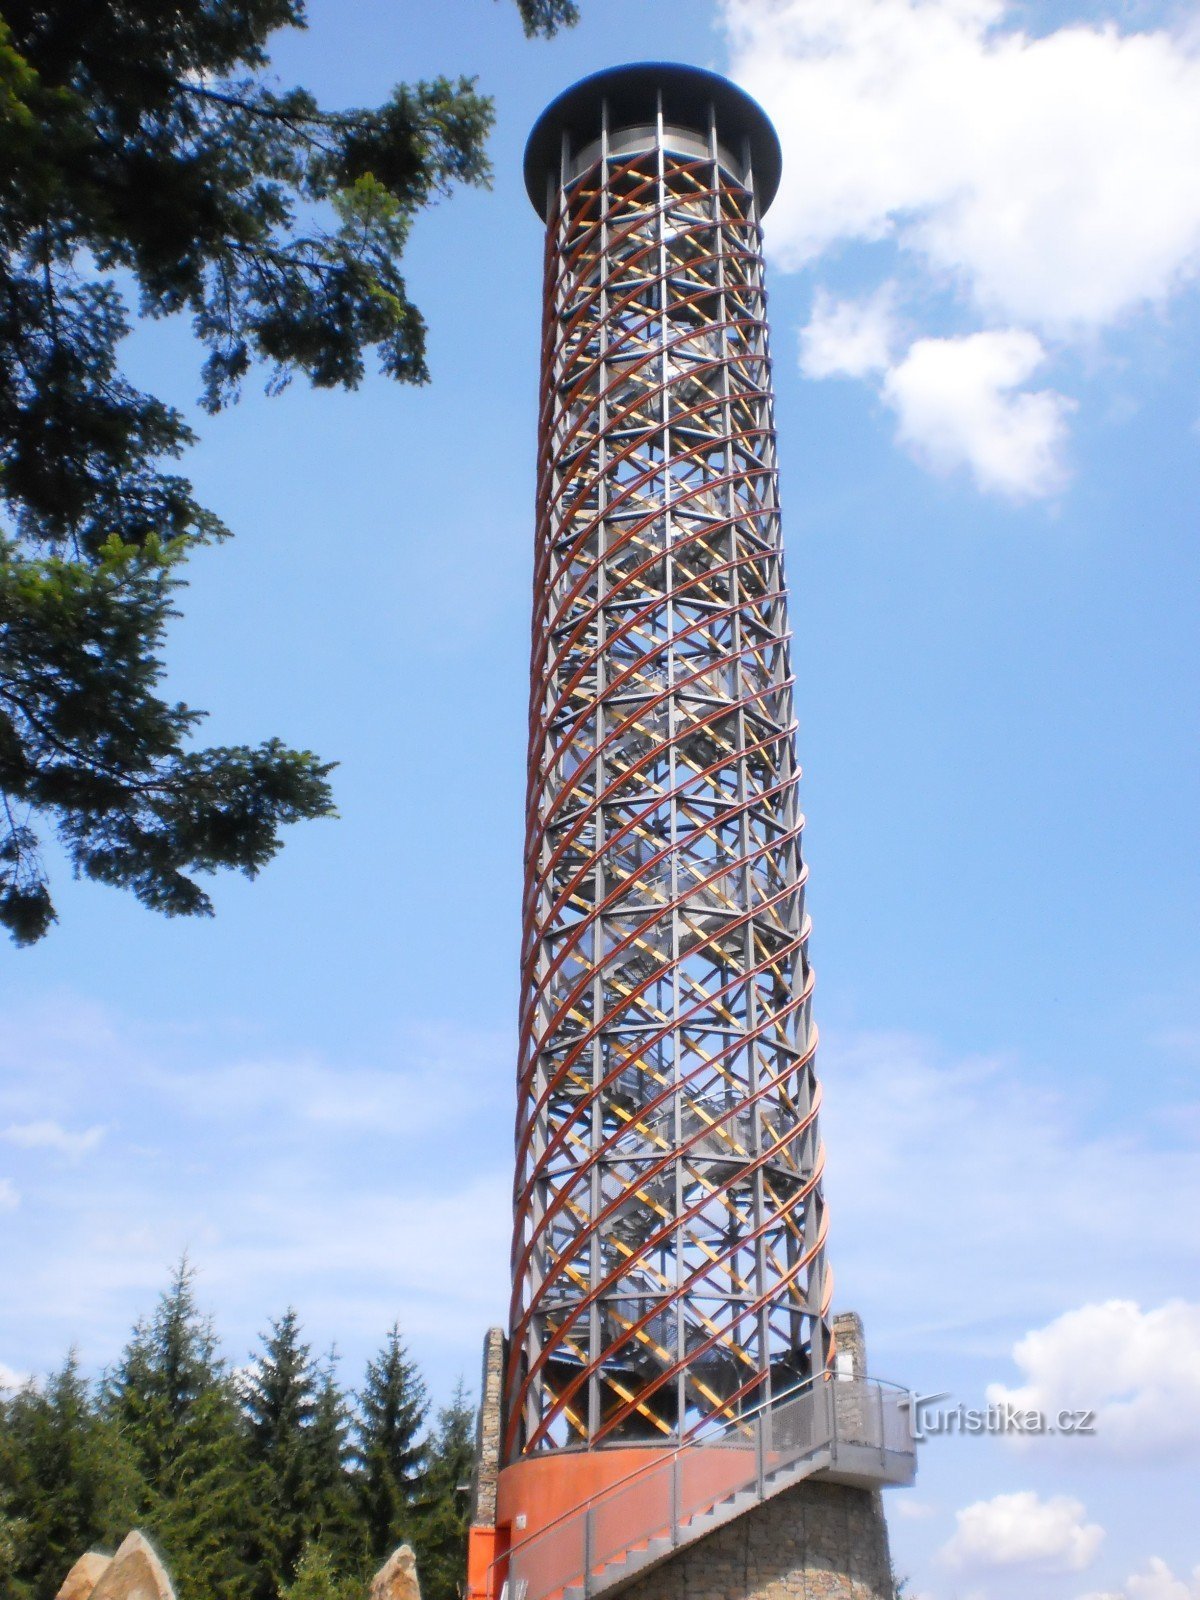 Torre di avvistamento, torre di avvistamento